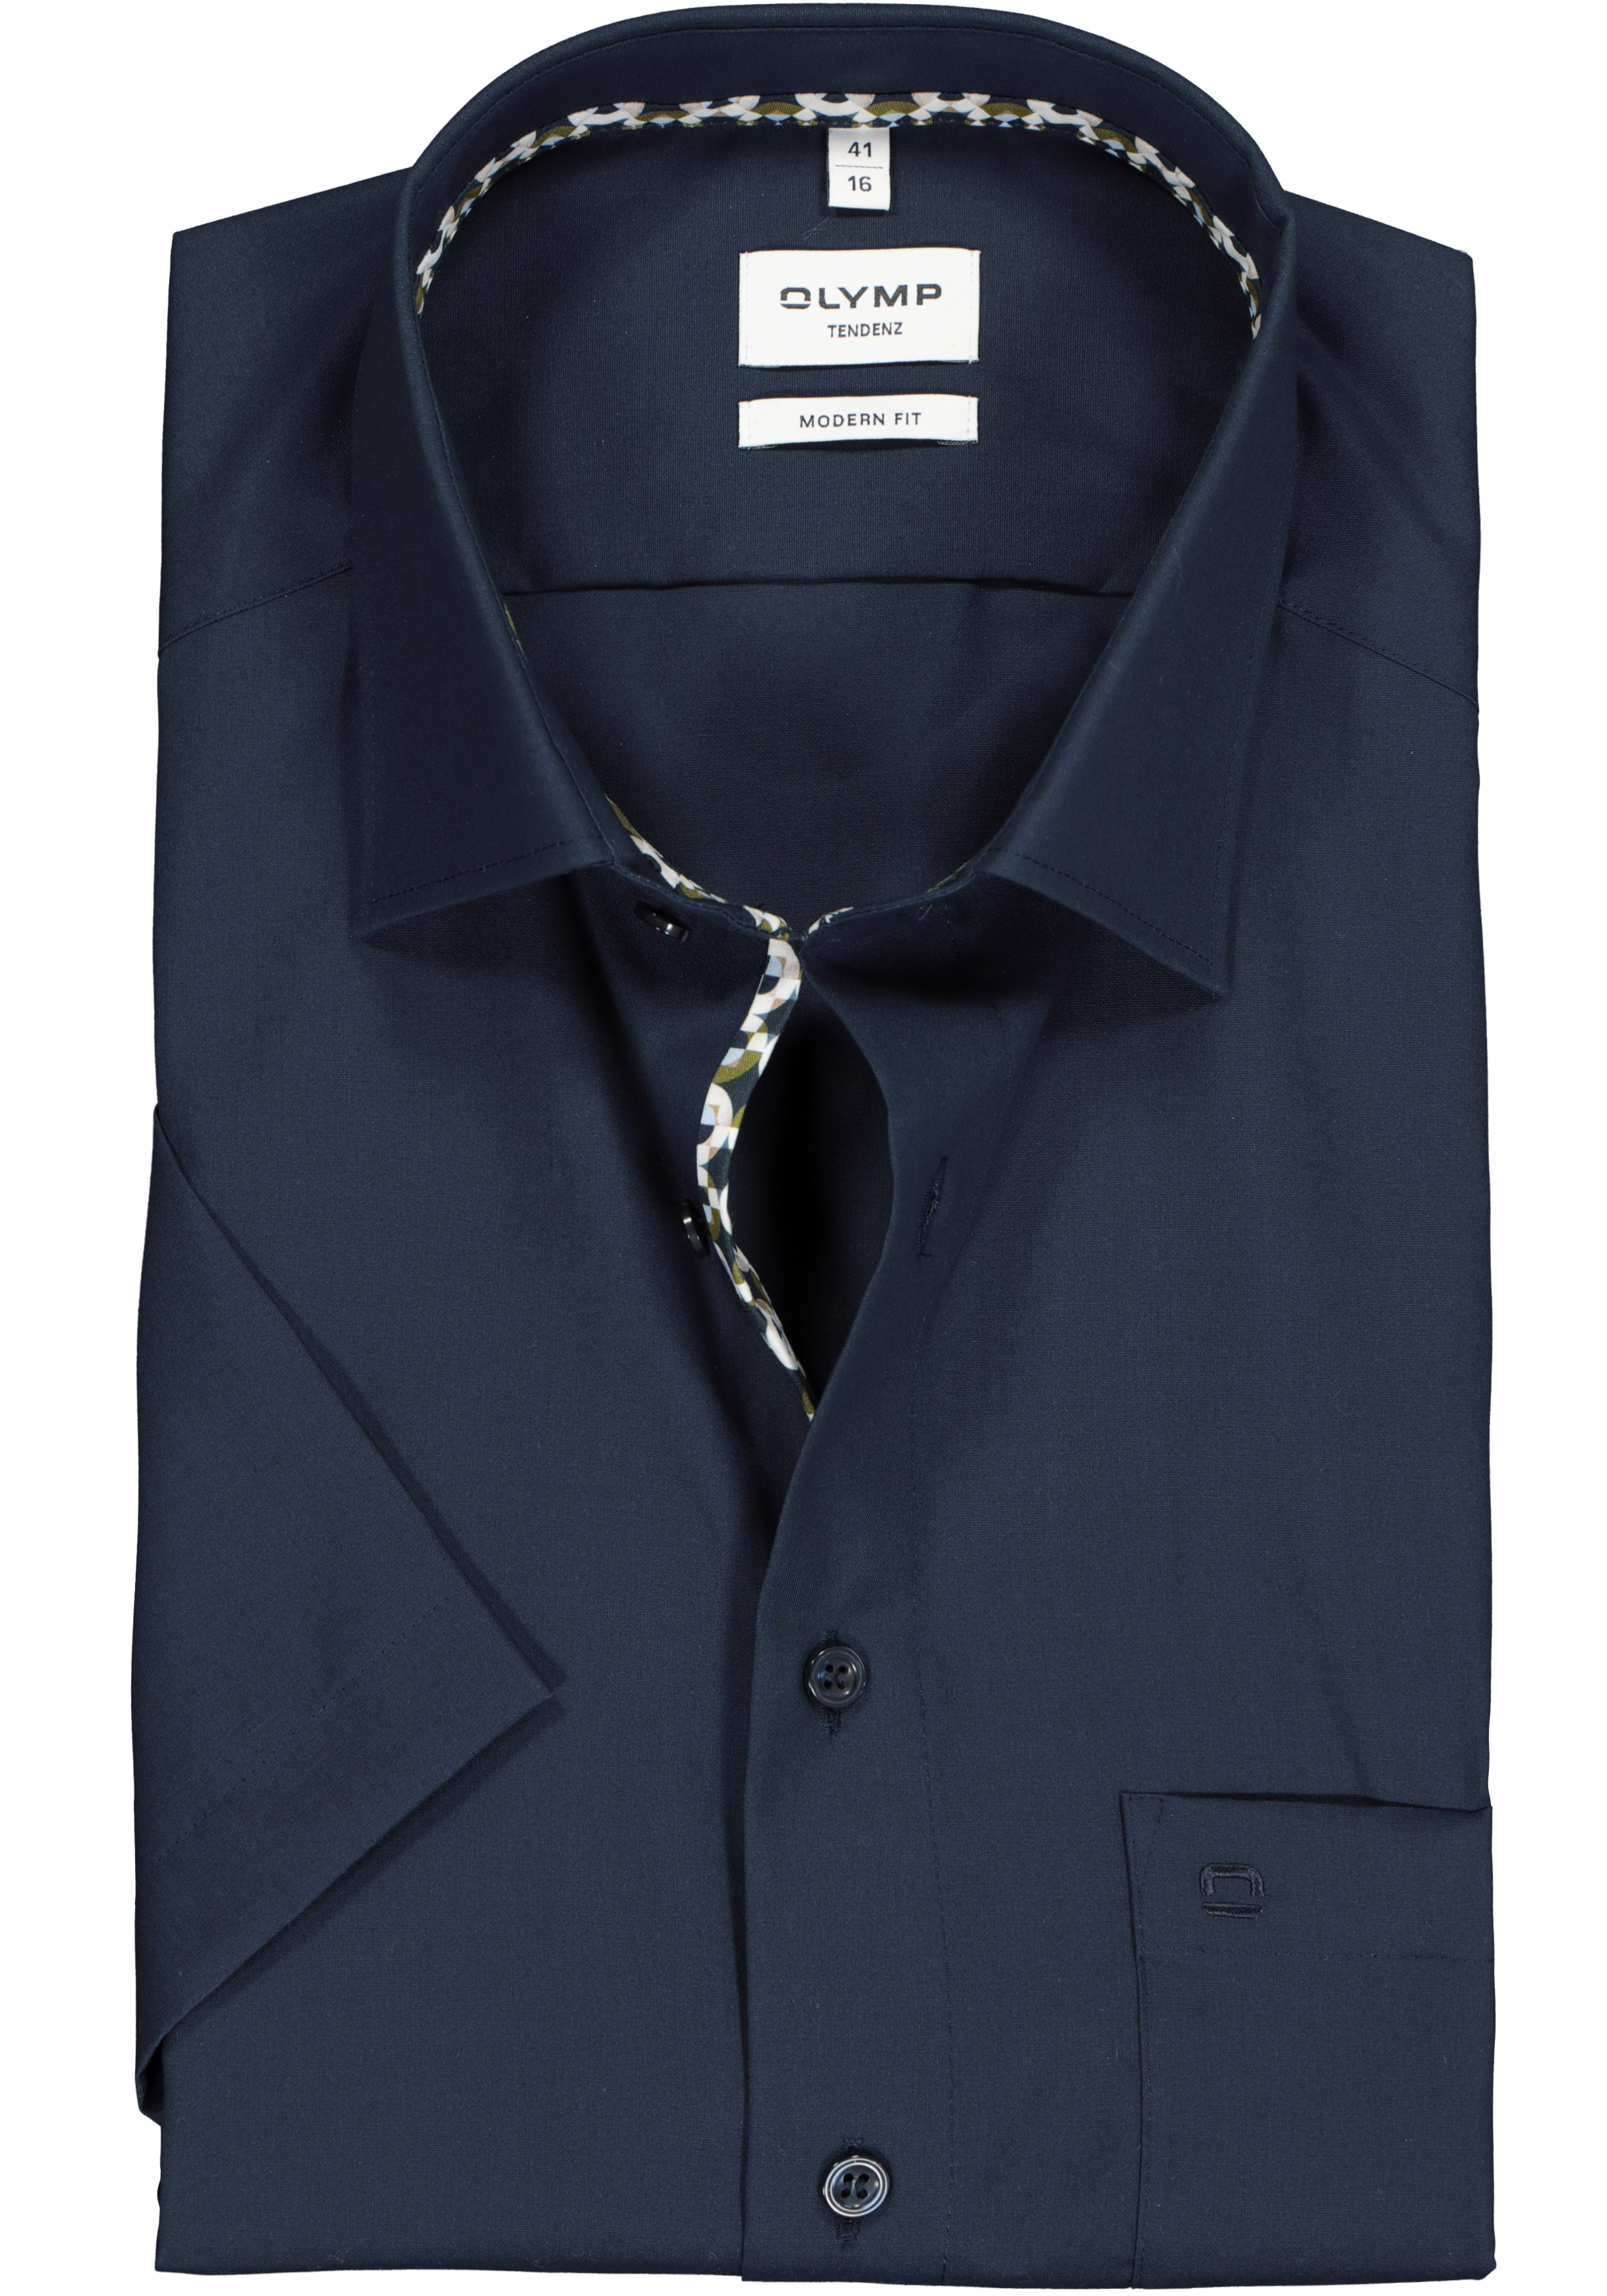 OLYMP modern fit overhemd, korte mouw, popeline, blauw (contrast)